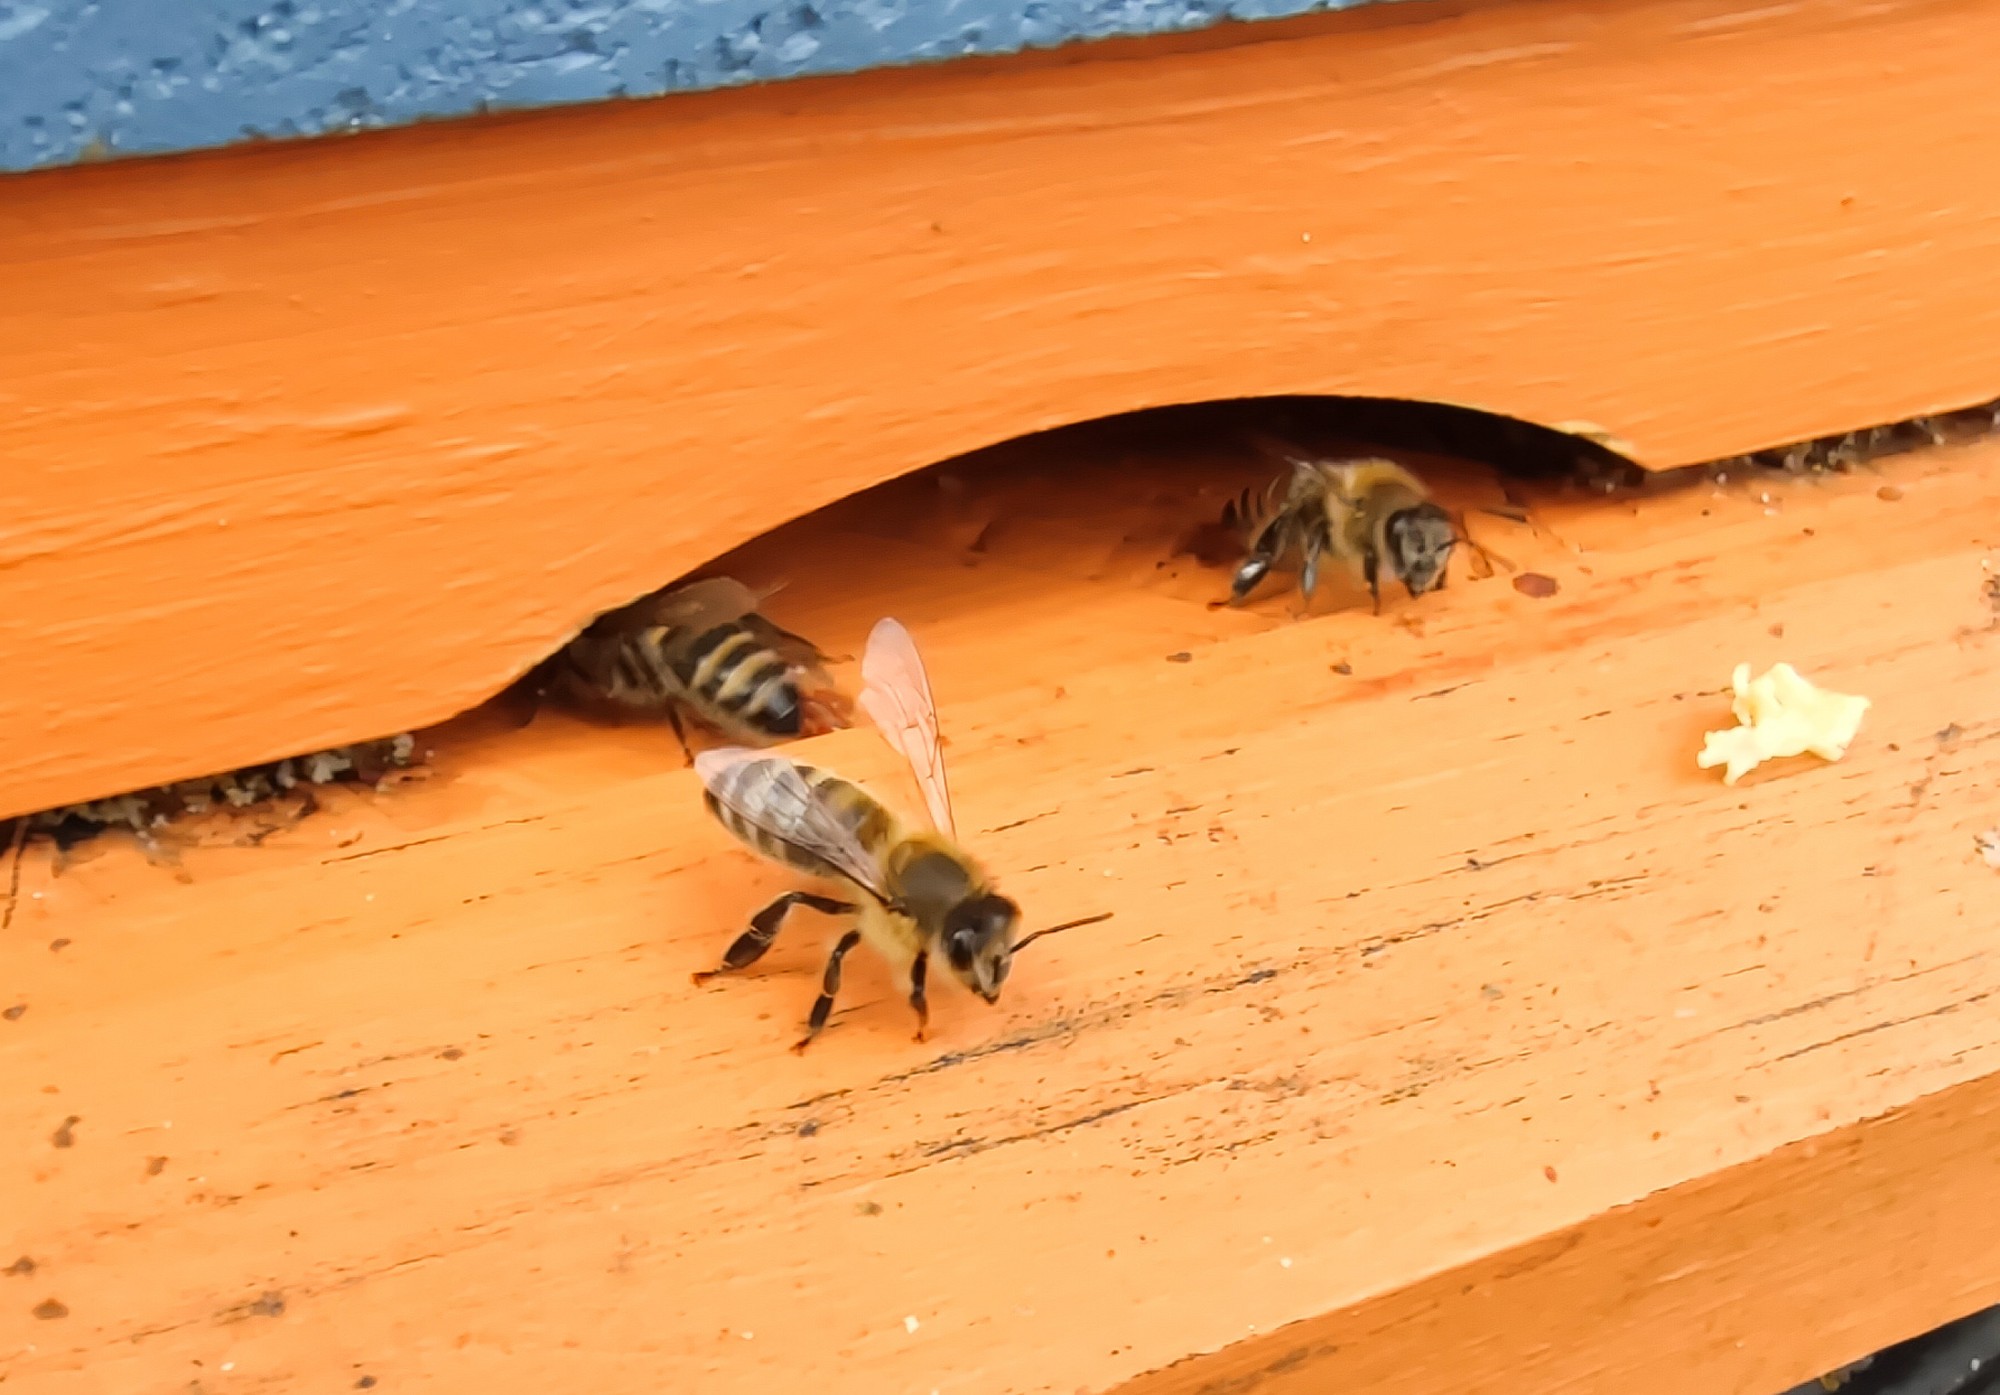 Zdjęcie pszczoły przygotowującej się do odlotu z ula